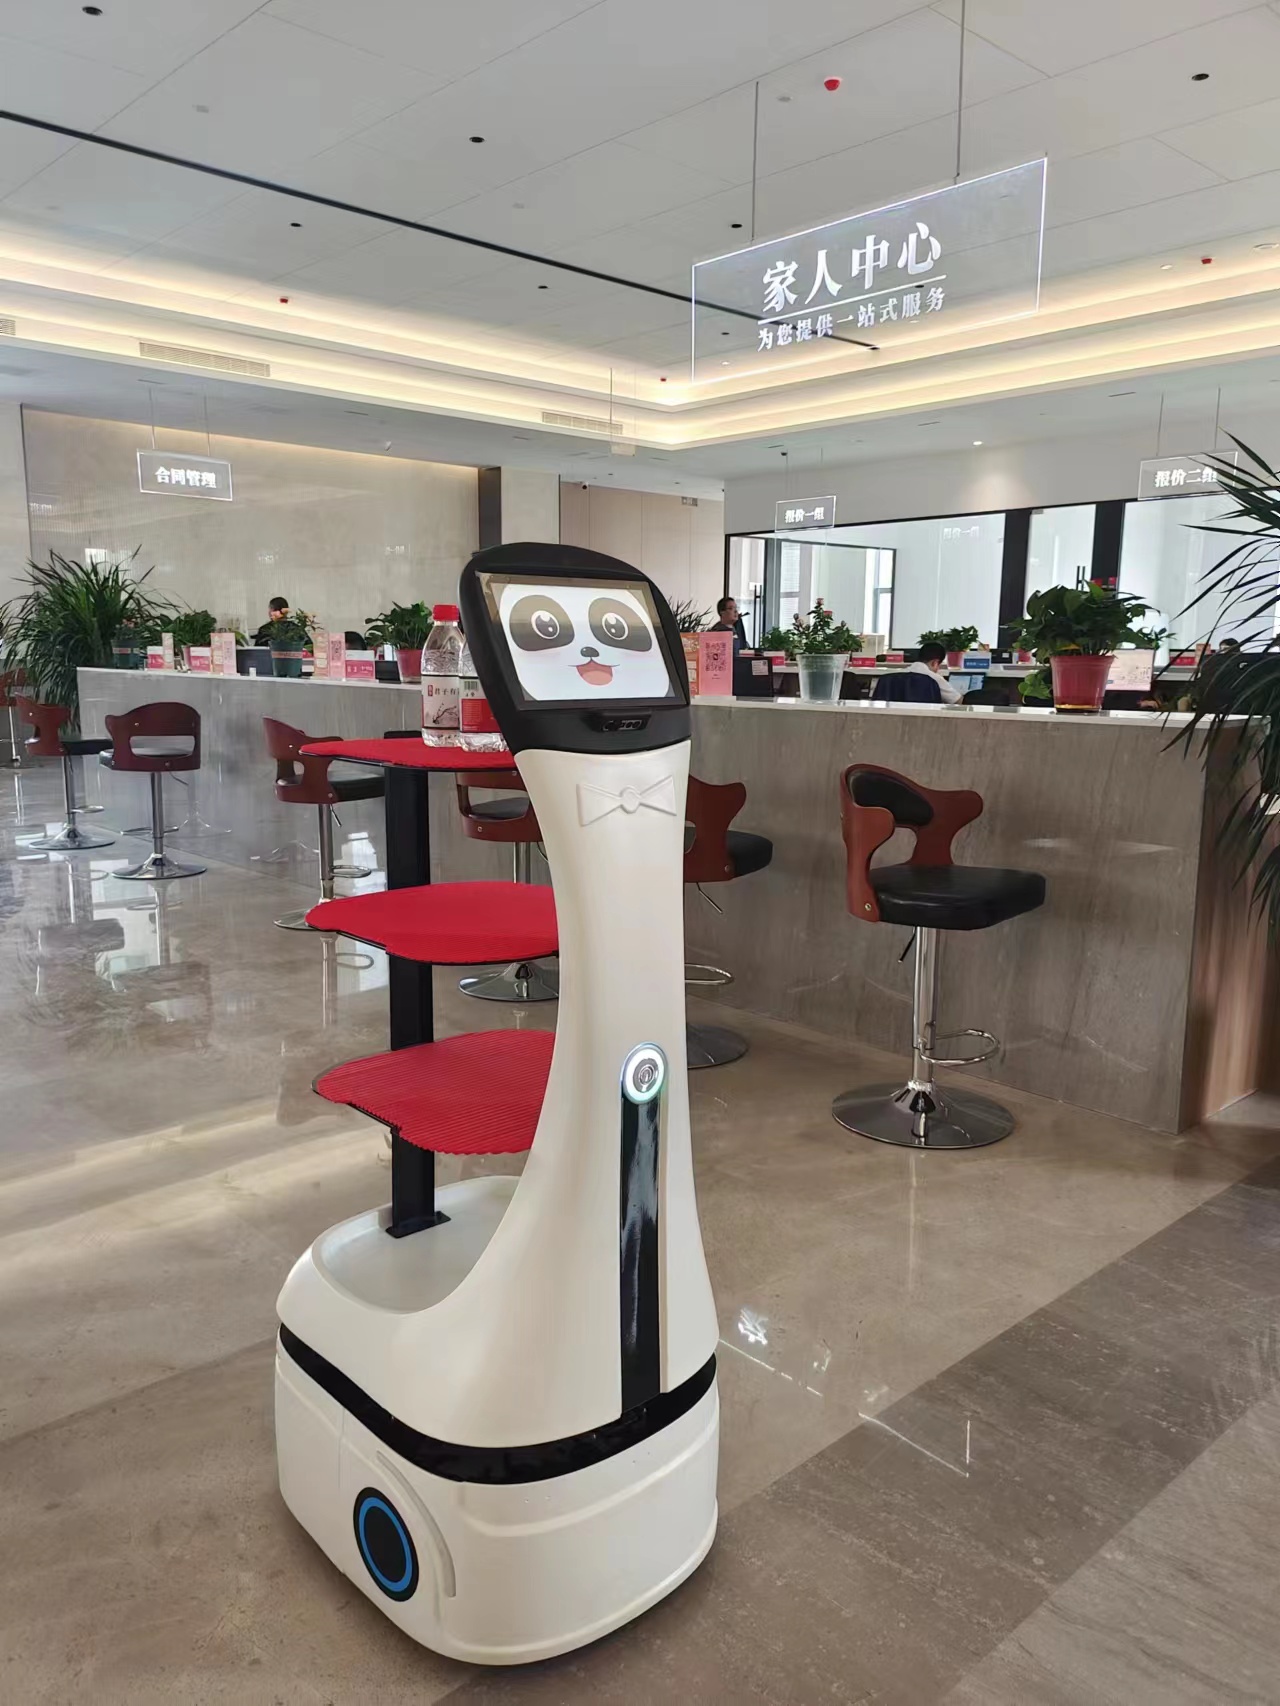 Το ρομπότ παράδοσης panda μετατρέπεται σε ένα κινητό «water bar»